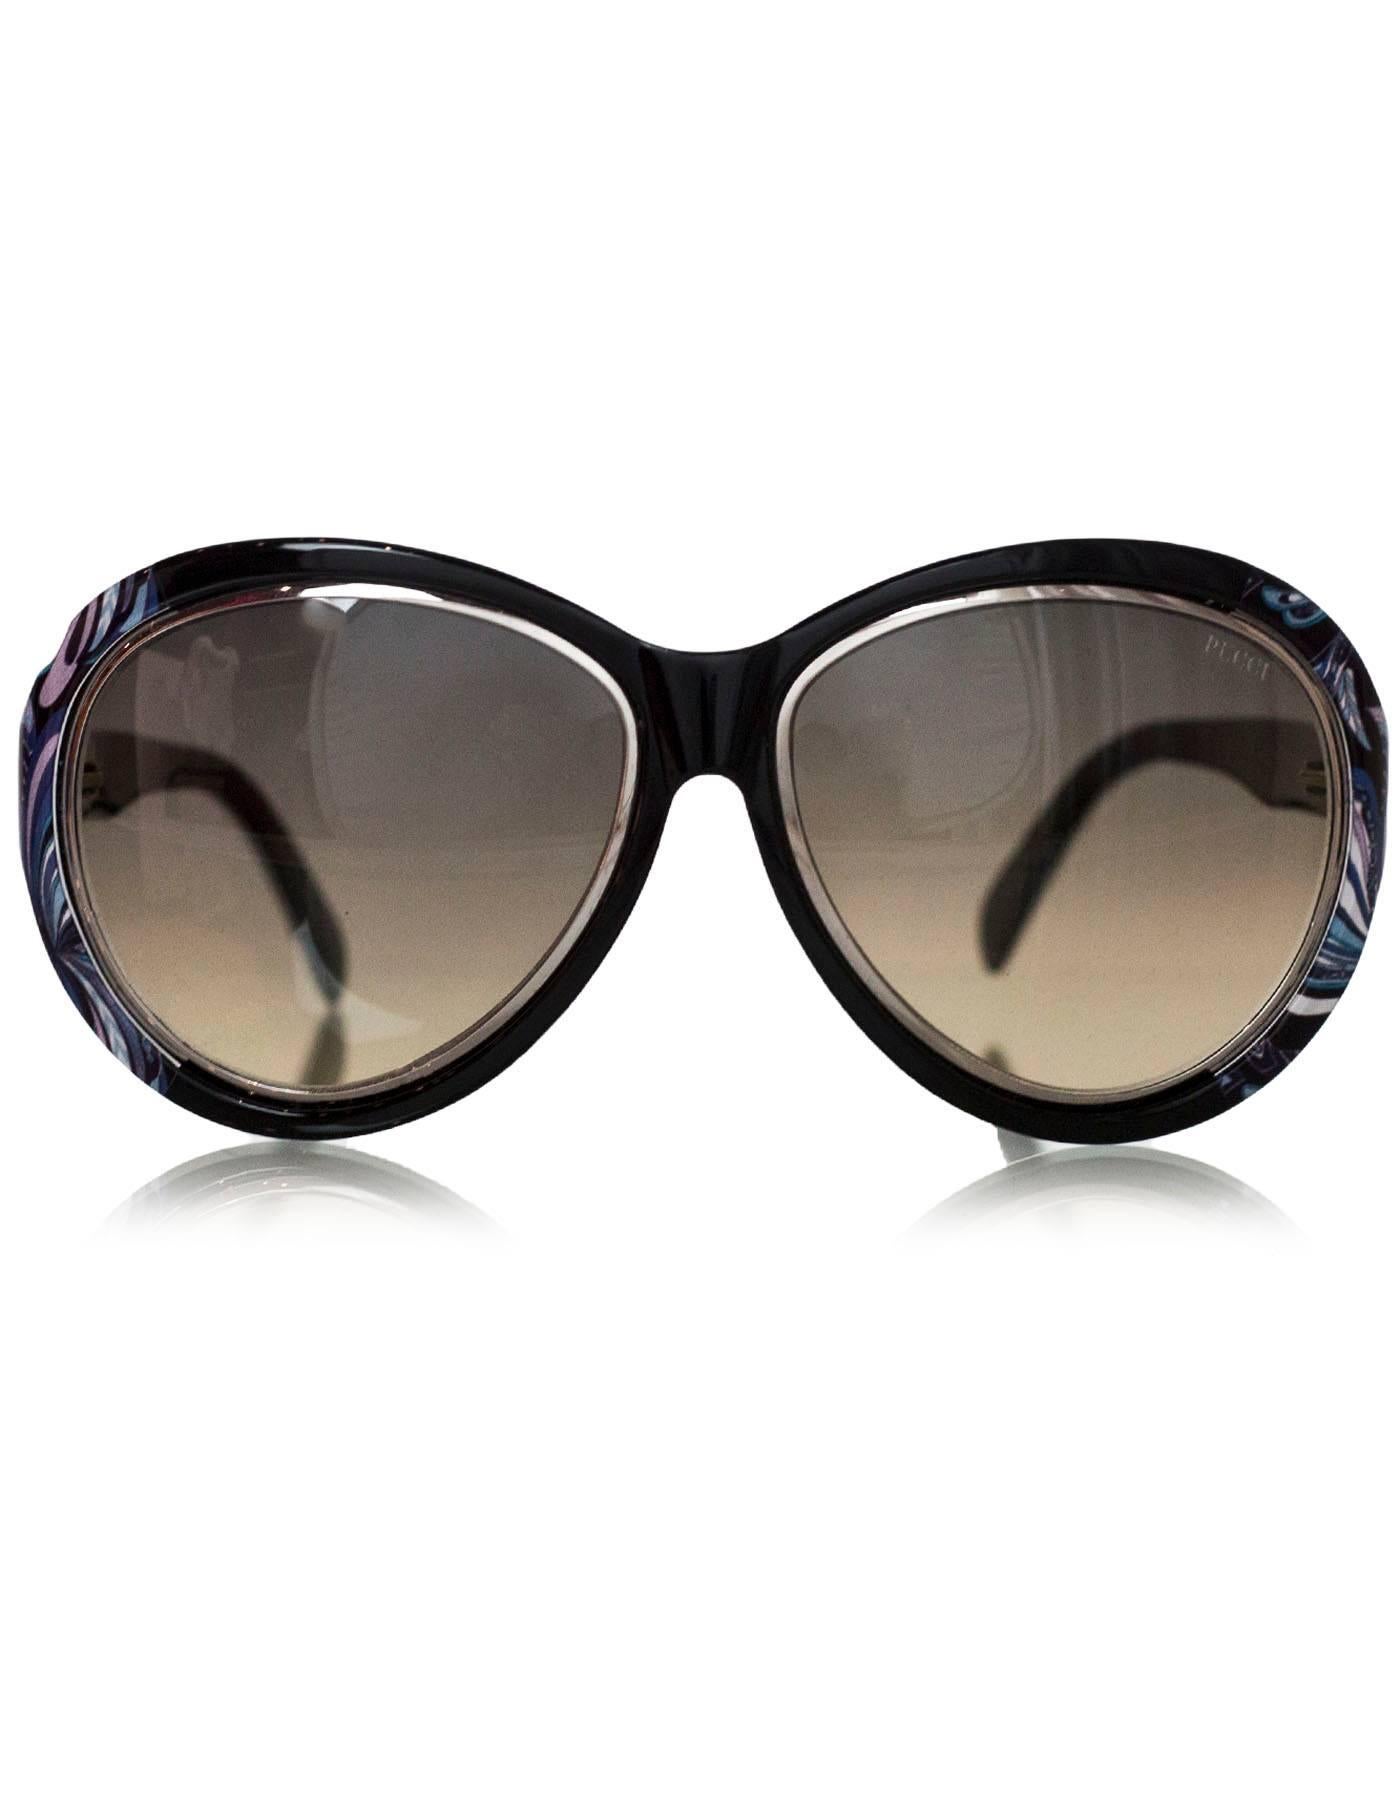 Emilio Pucci Black, Blue & Purple Sunglasses In Excellent Condition In New York, NY